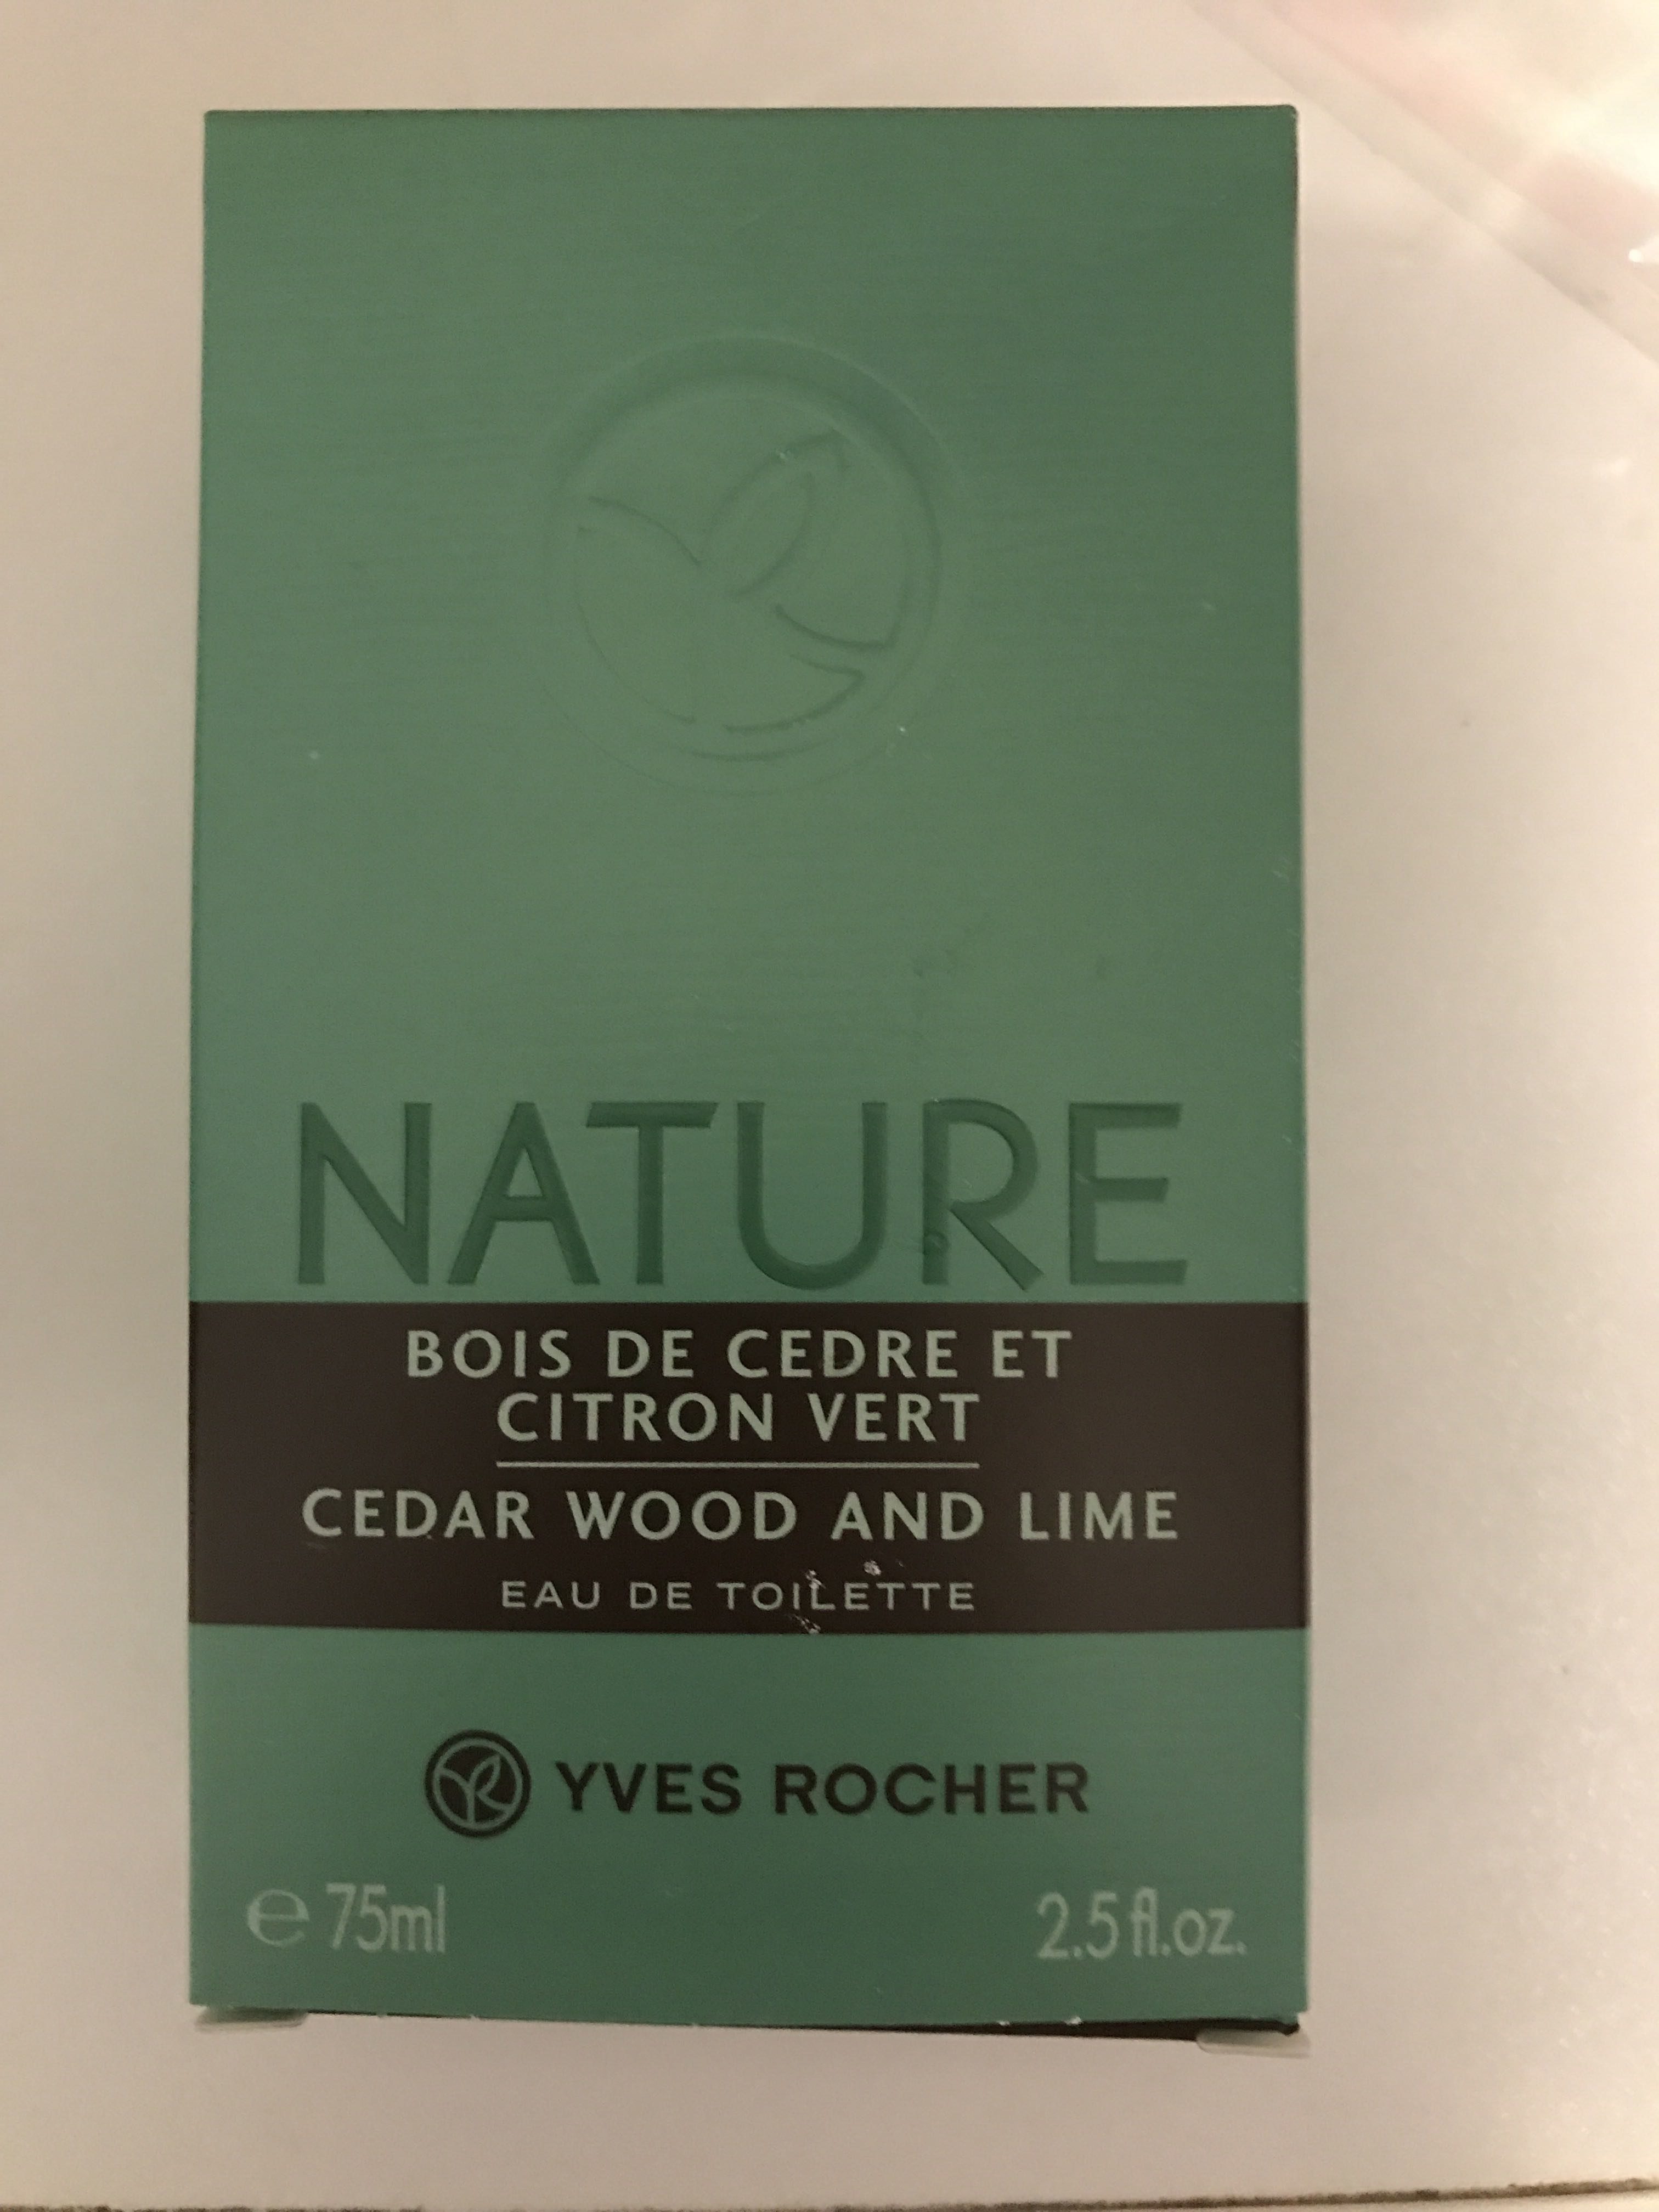 Nature Bois de cèdre et Citron vert - Produit - fr